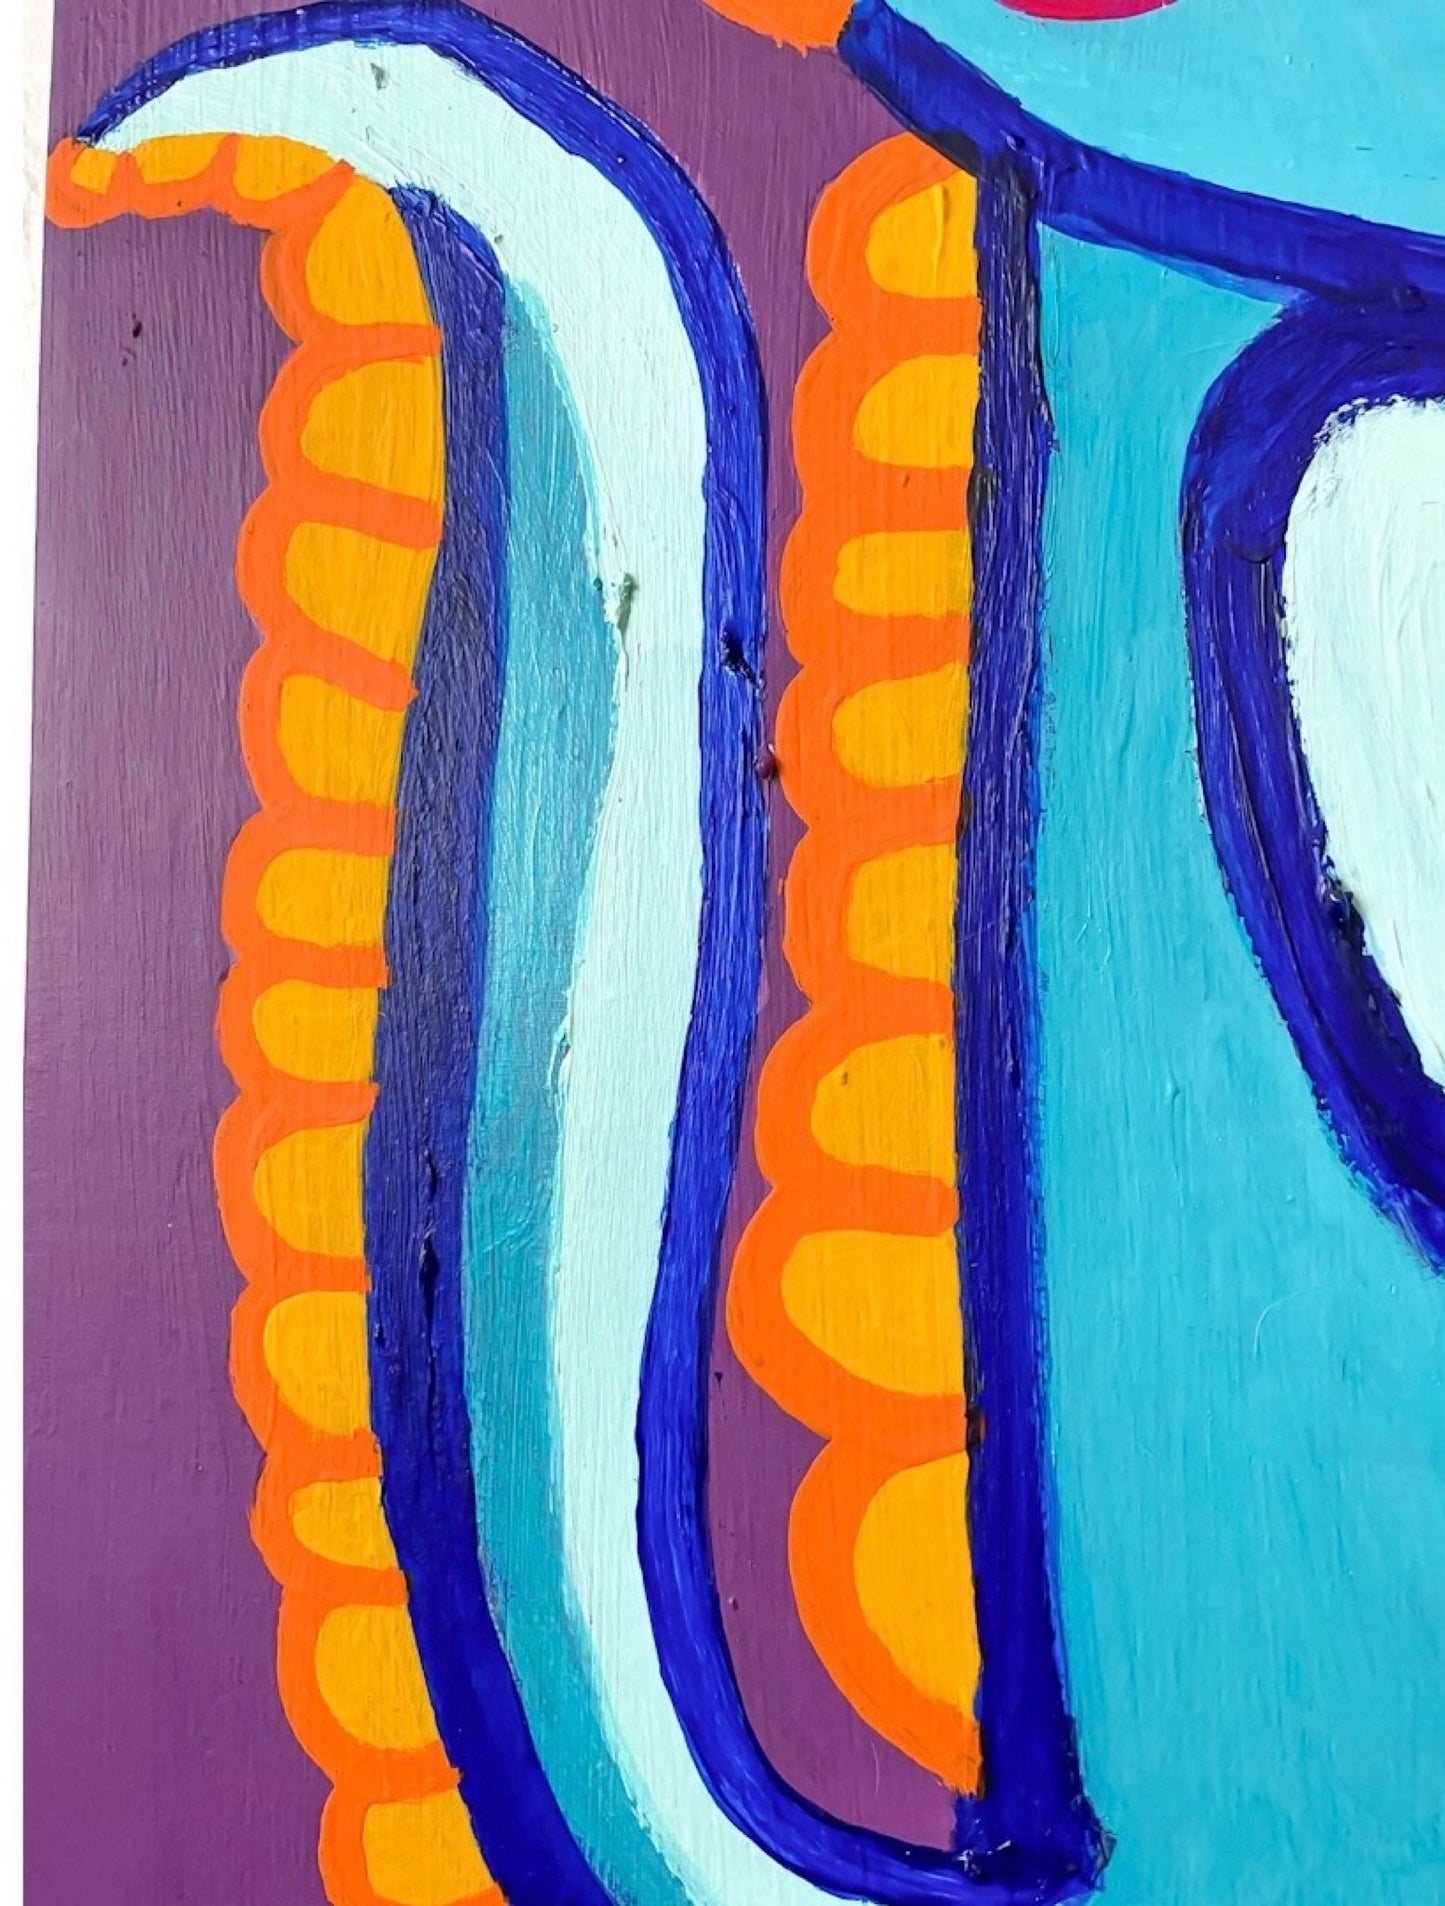 "Le dinosaure bleu que je transporte dans ma tête ces derniers jours, en cours de traitement" - Peinture 